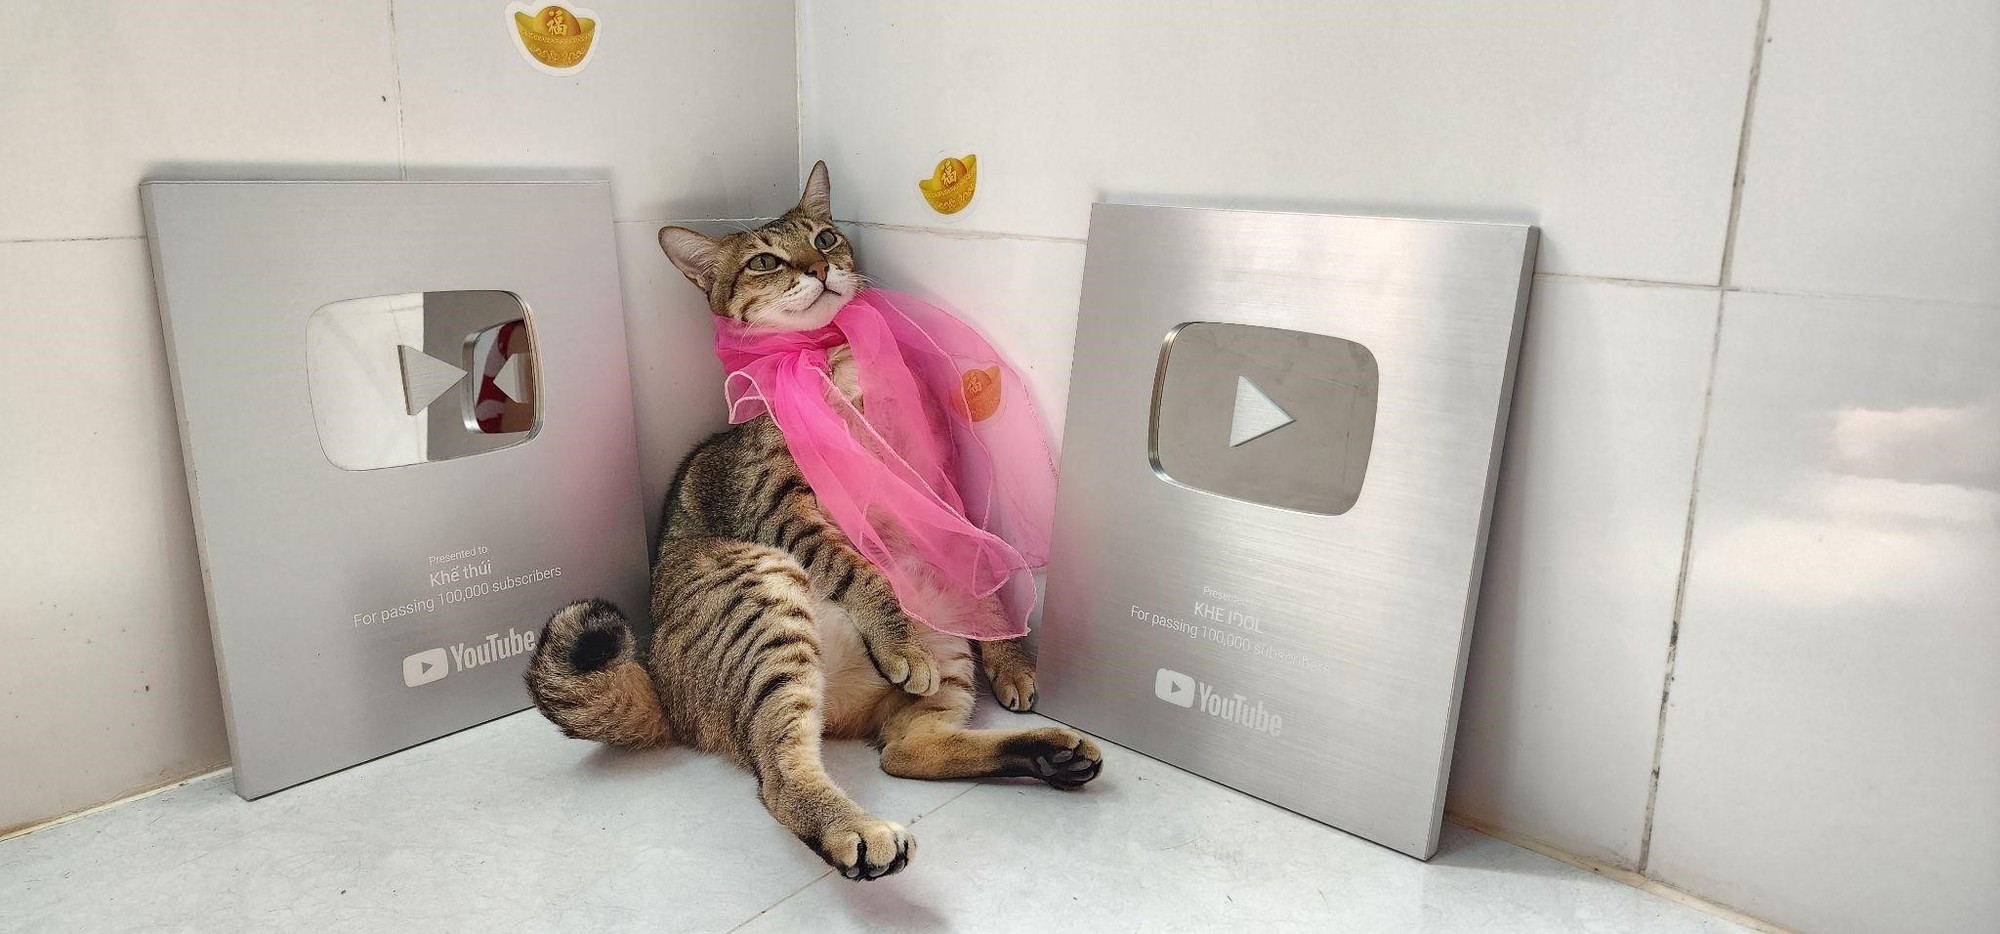 Chú mèo đầu tiên ở Việt Nam nhận được nút bạc YouTube